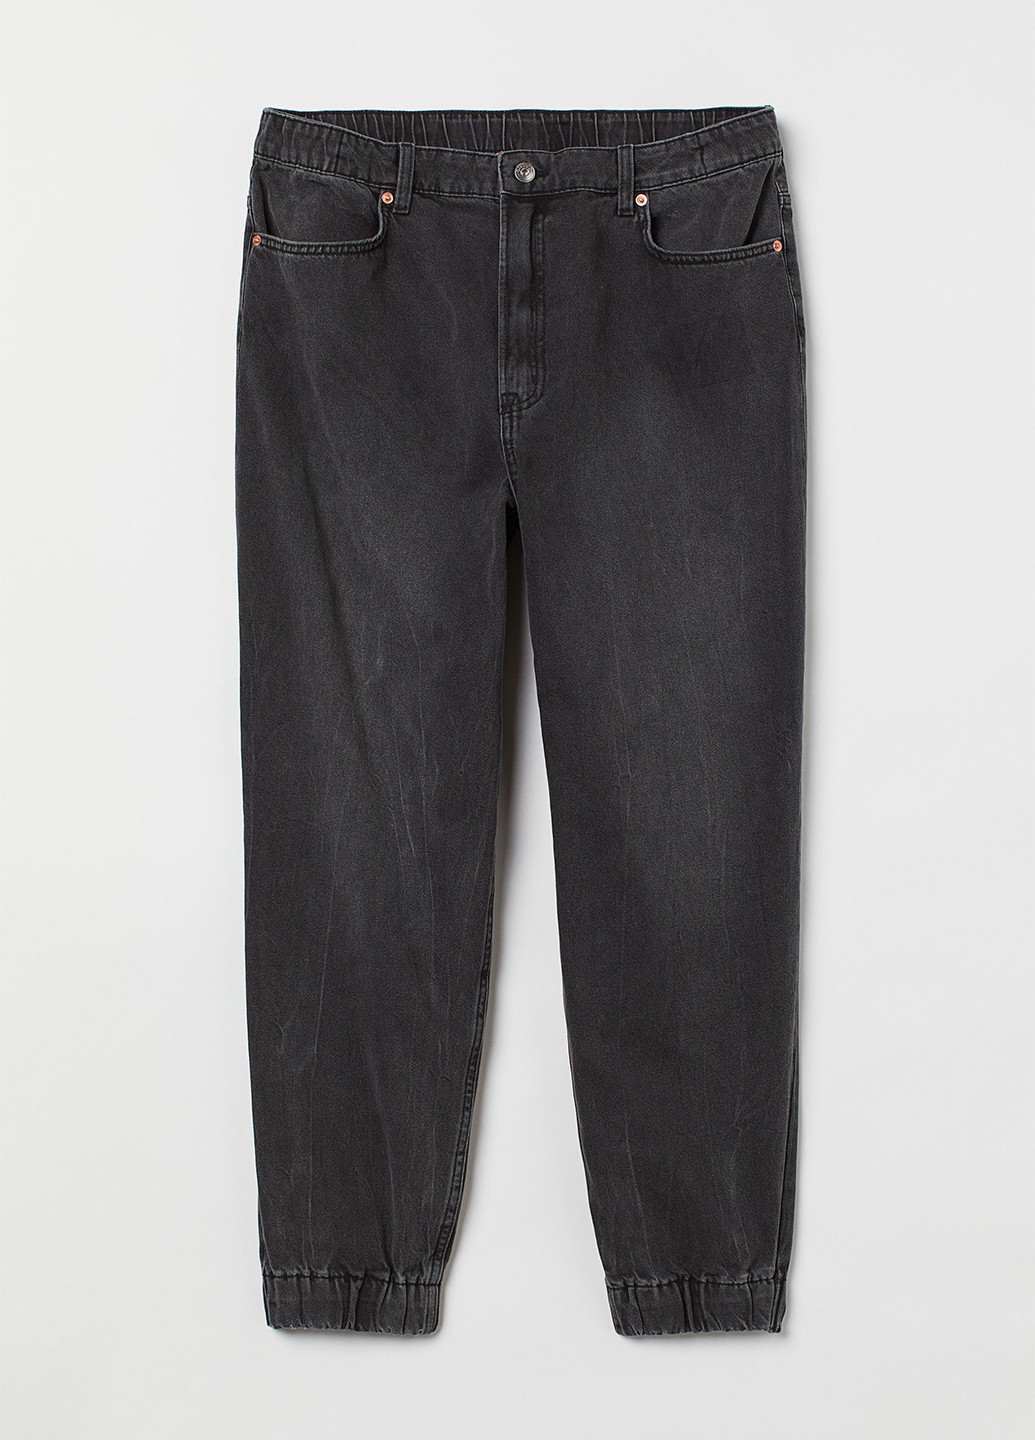 Черные демисезонные джоггеры джинсы H&M